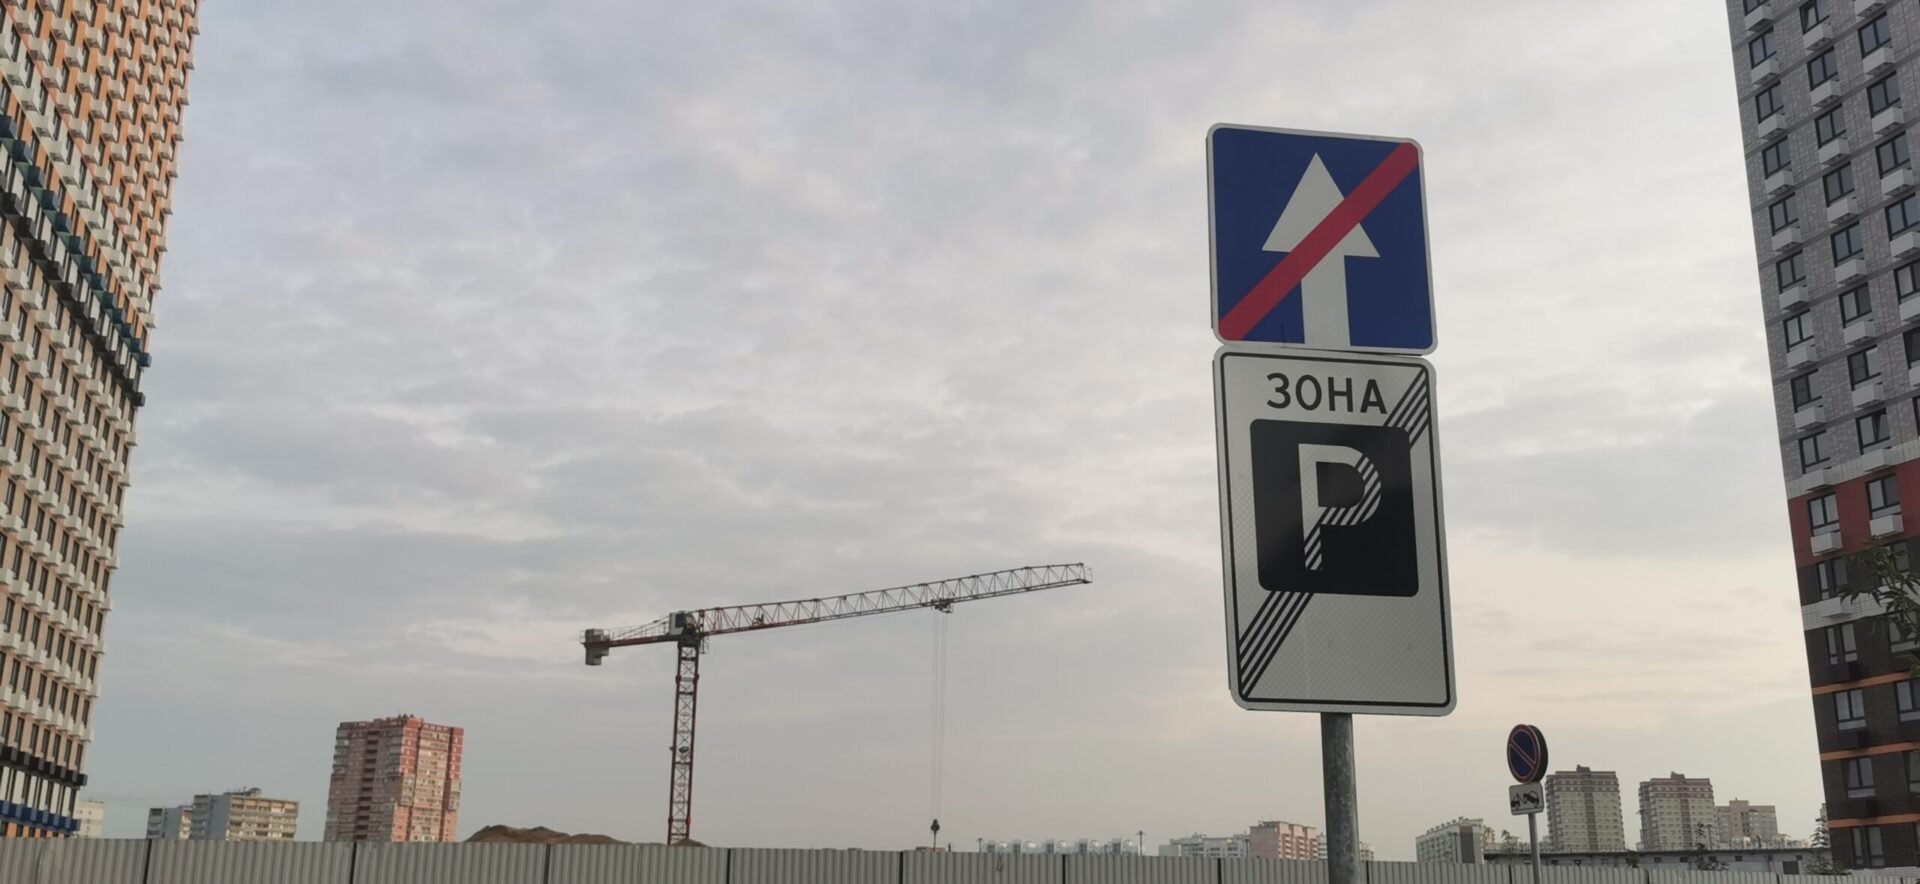 Юрист Миронов предупредил водителей в РФ, что уловки не спасут автомобиль от эвакуации